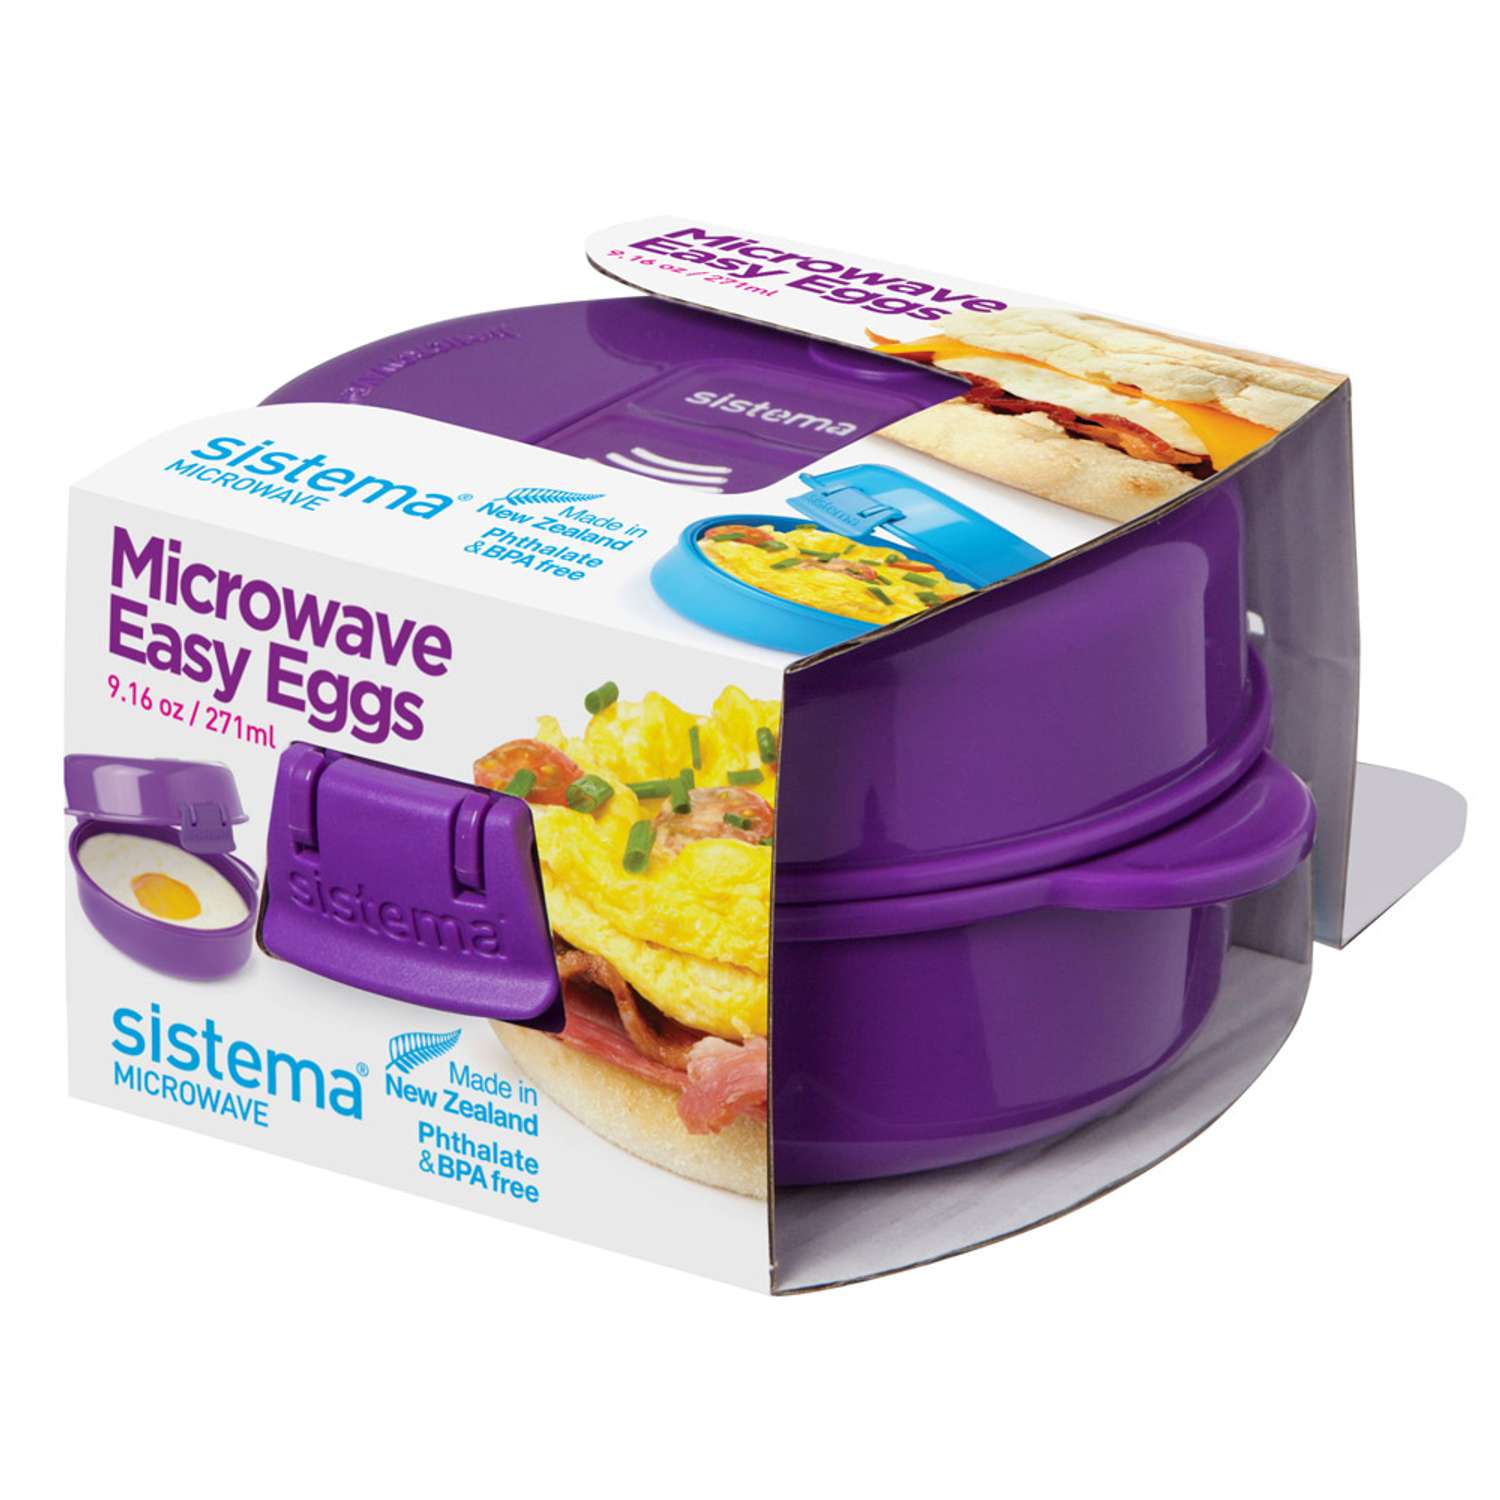 Омлетница-яйцеварка Sistema Microwave 271мл - фото 2